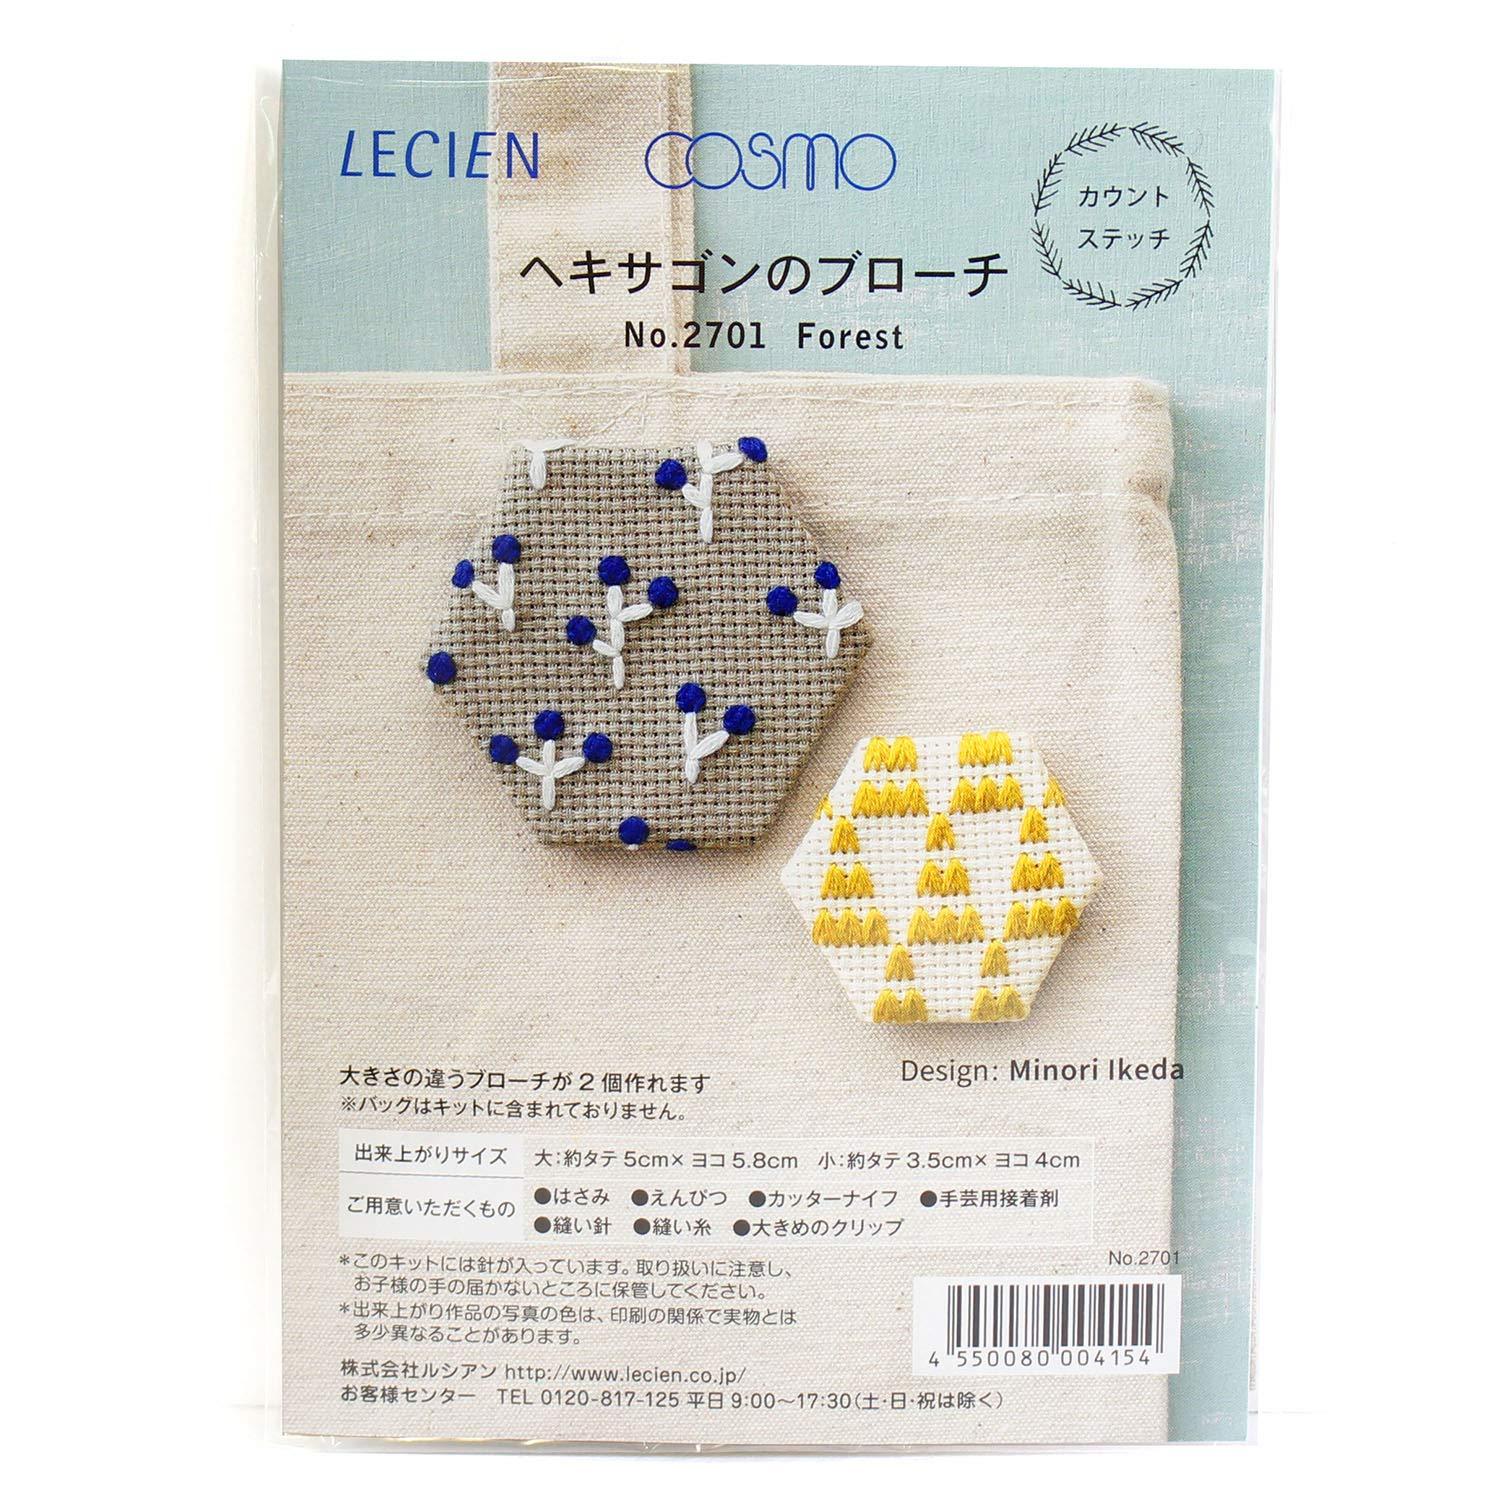 LECIEN (ルシアン) 刺繍キット カウントステッチ ヘキサゴンのブローチ フォレスト・2701 (1402665)